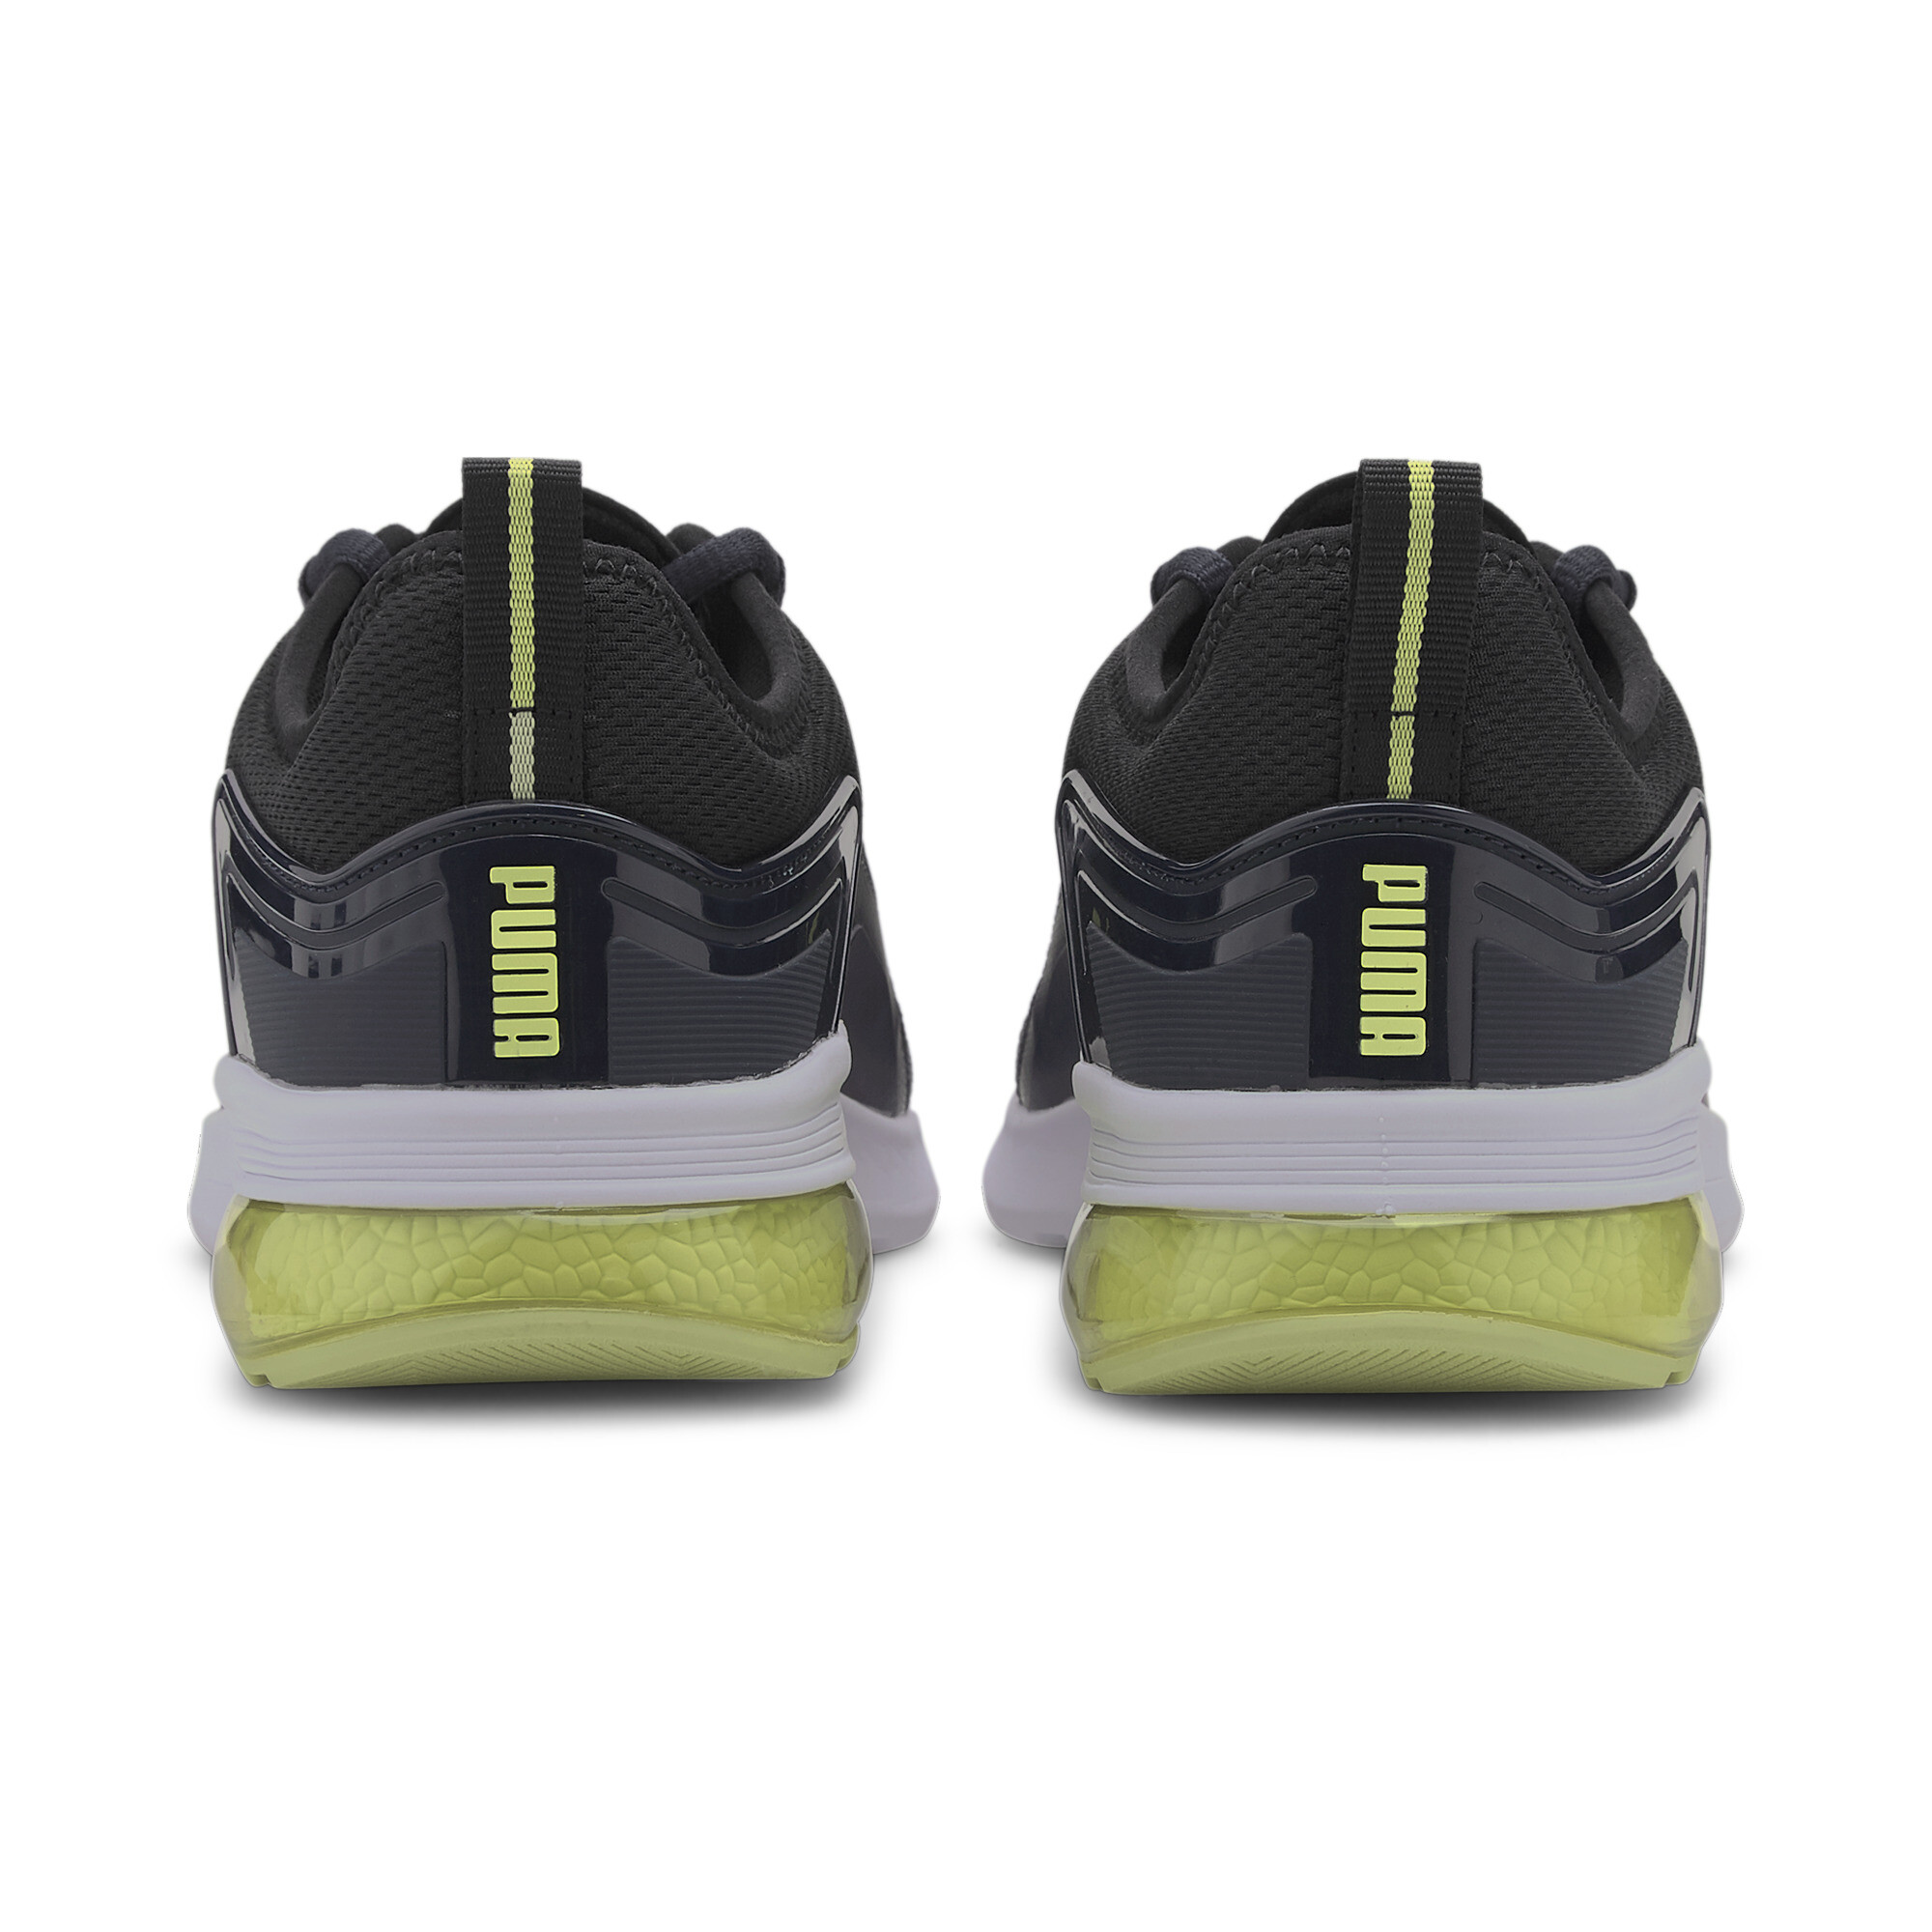 Indexbild 9 - PUMA Electron Street Era Sneaker Unisex Schuhe Basics Neu